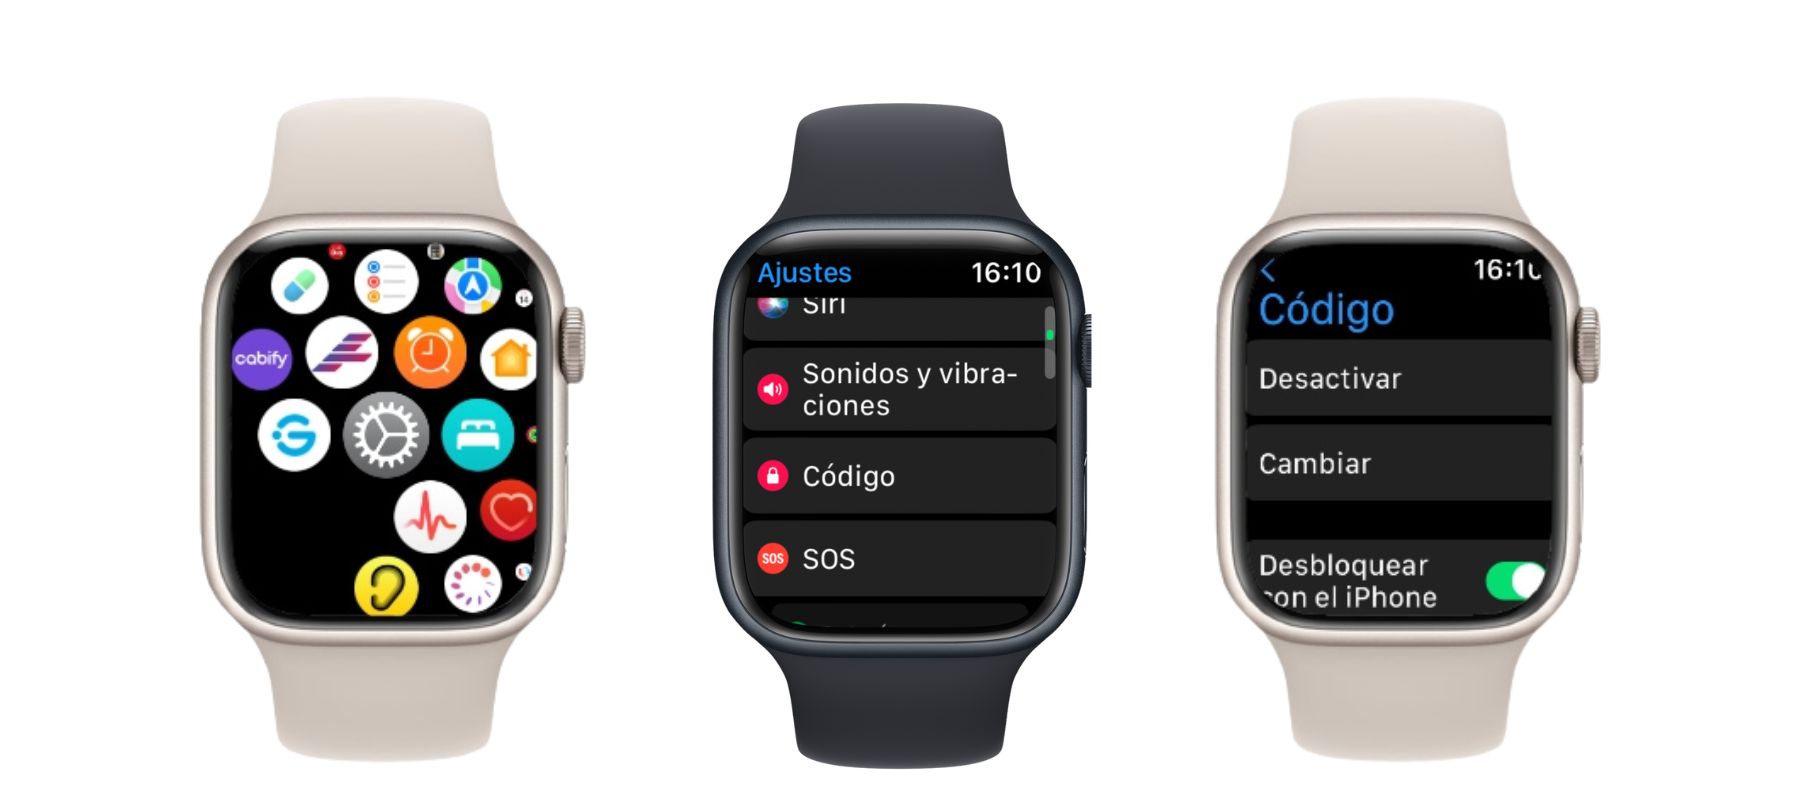 Recuperar código Apple Watch, ¿es posible?